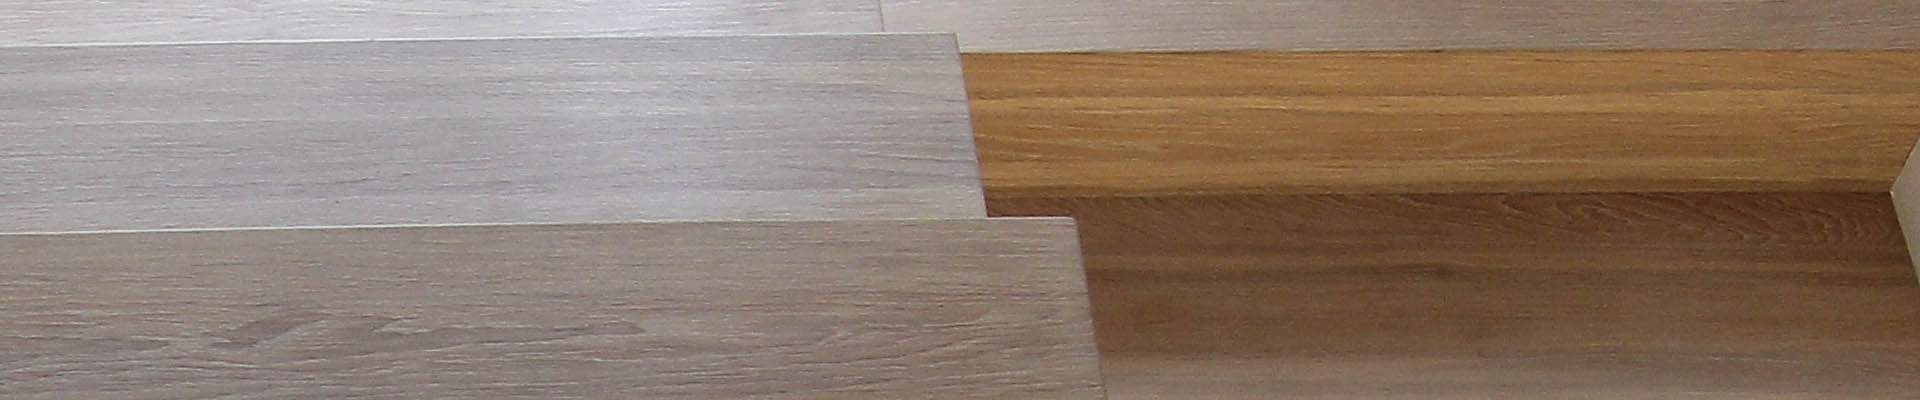 12b. Schody dębowe klejone do betonu, wykonane z litego drewna. 